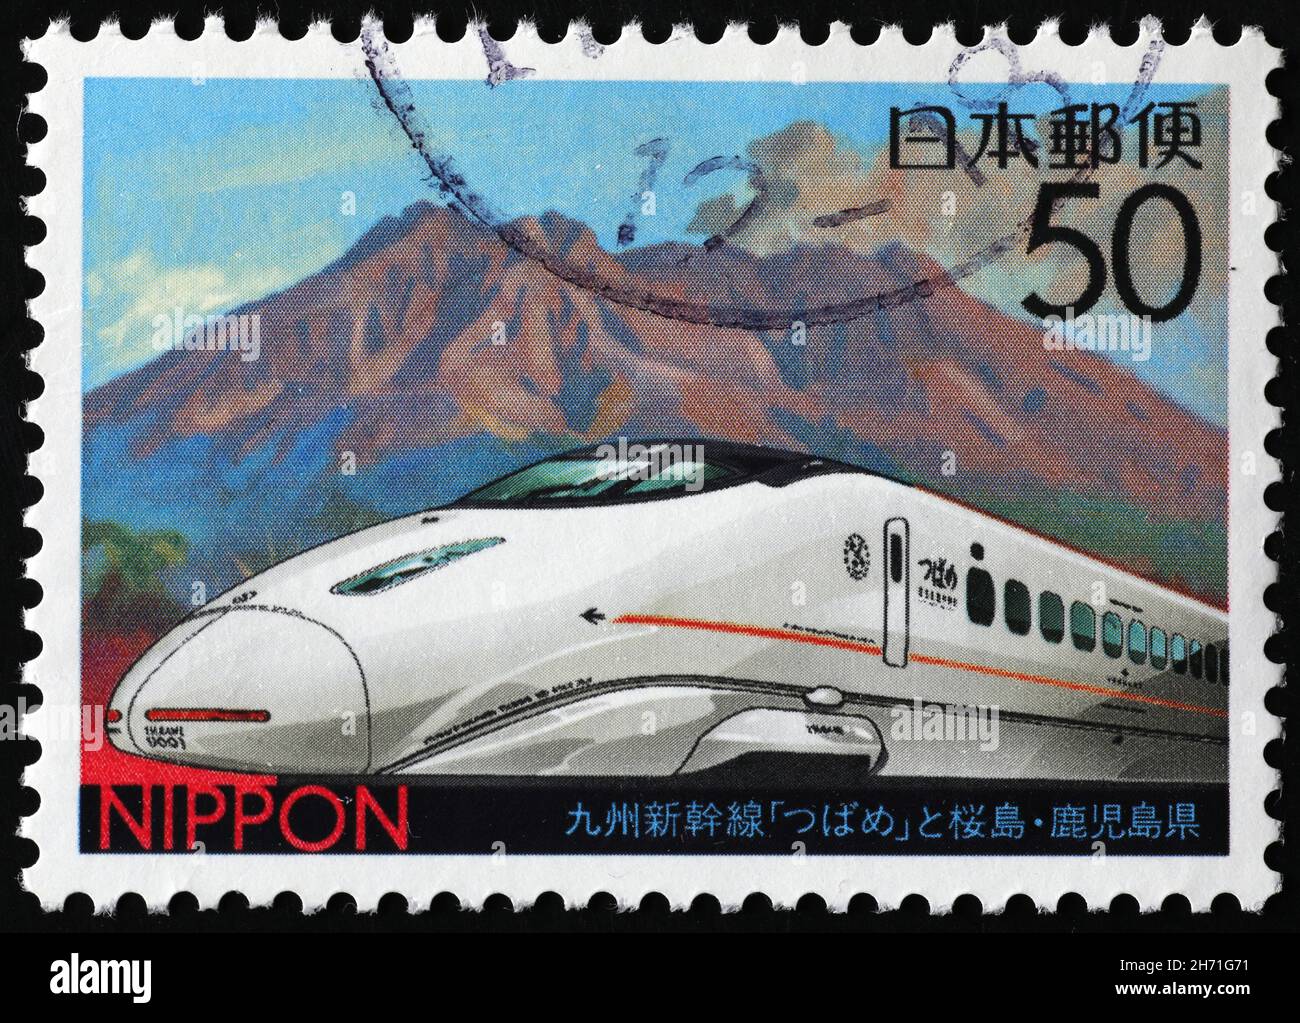 Japanischer Hochgeschwindigkeitszug auf Briefmarke Stockfoto